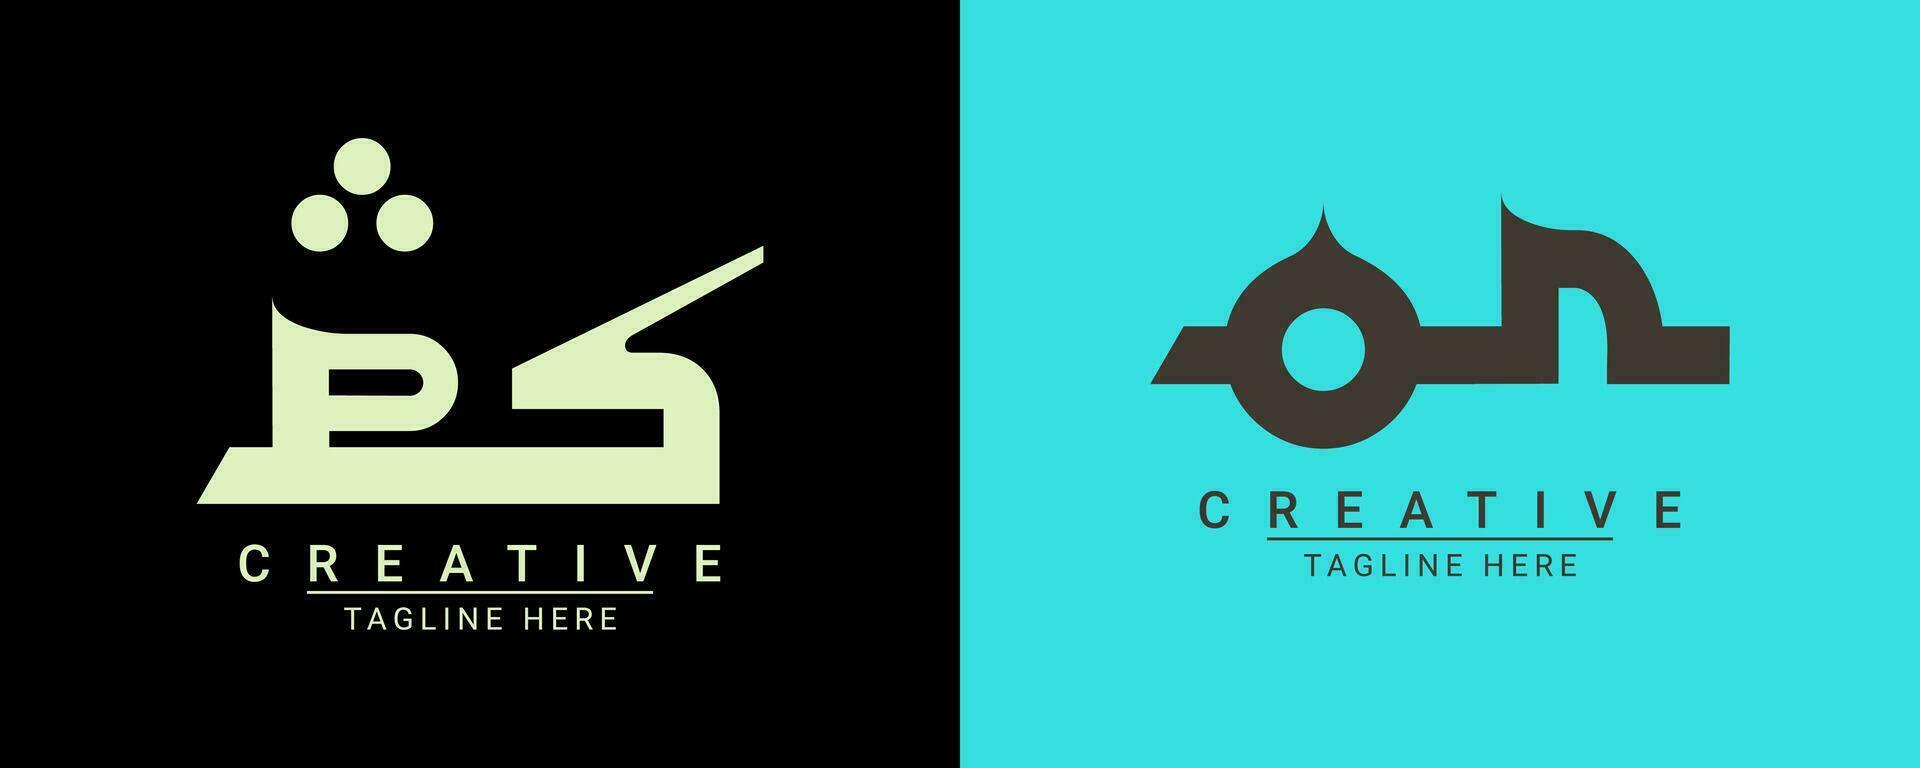 moderno creativo minimalista empresa logo diseño. vector